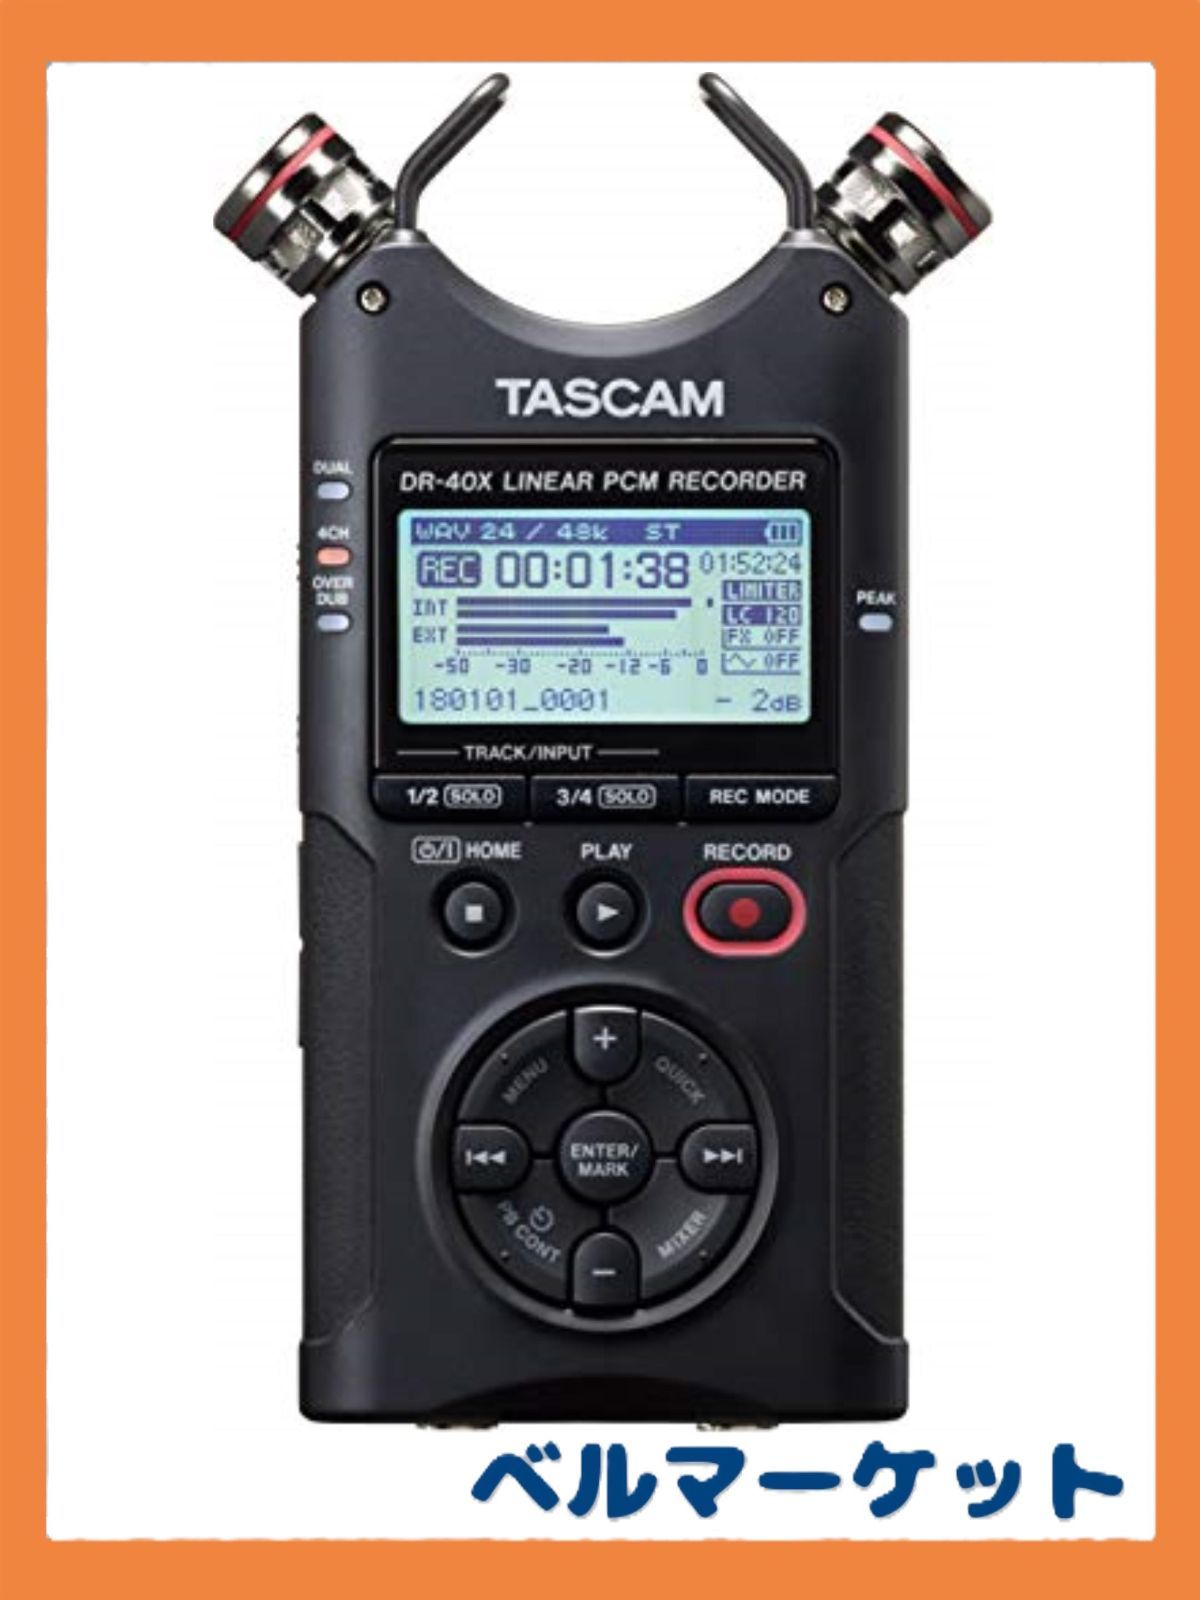 TASCAM DR-40x #パイノーラル #立体音響 #ASMRパイノーラル - houstoncreativesmiles.com